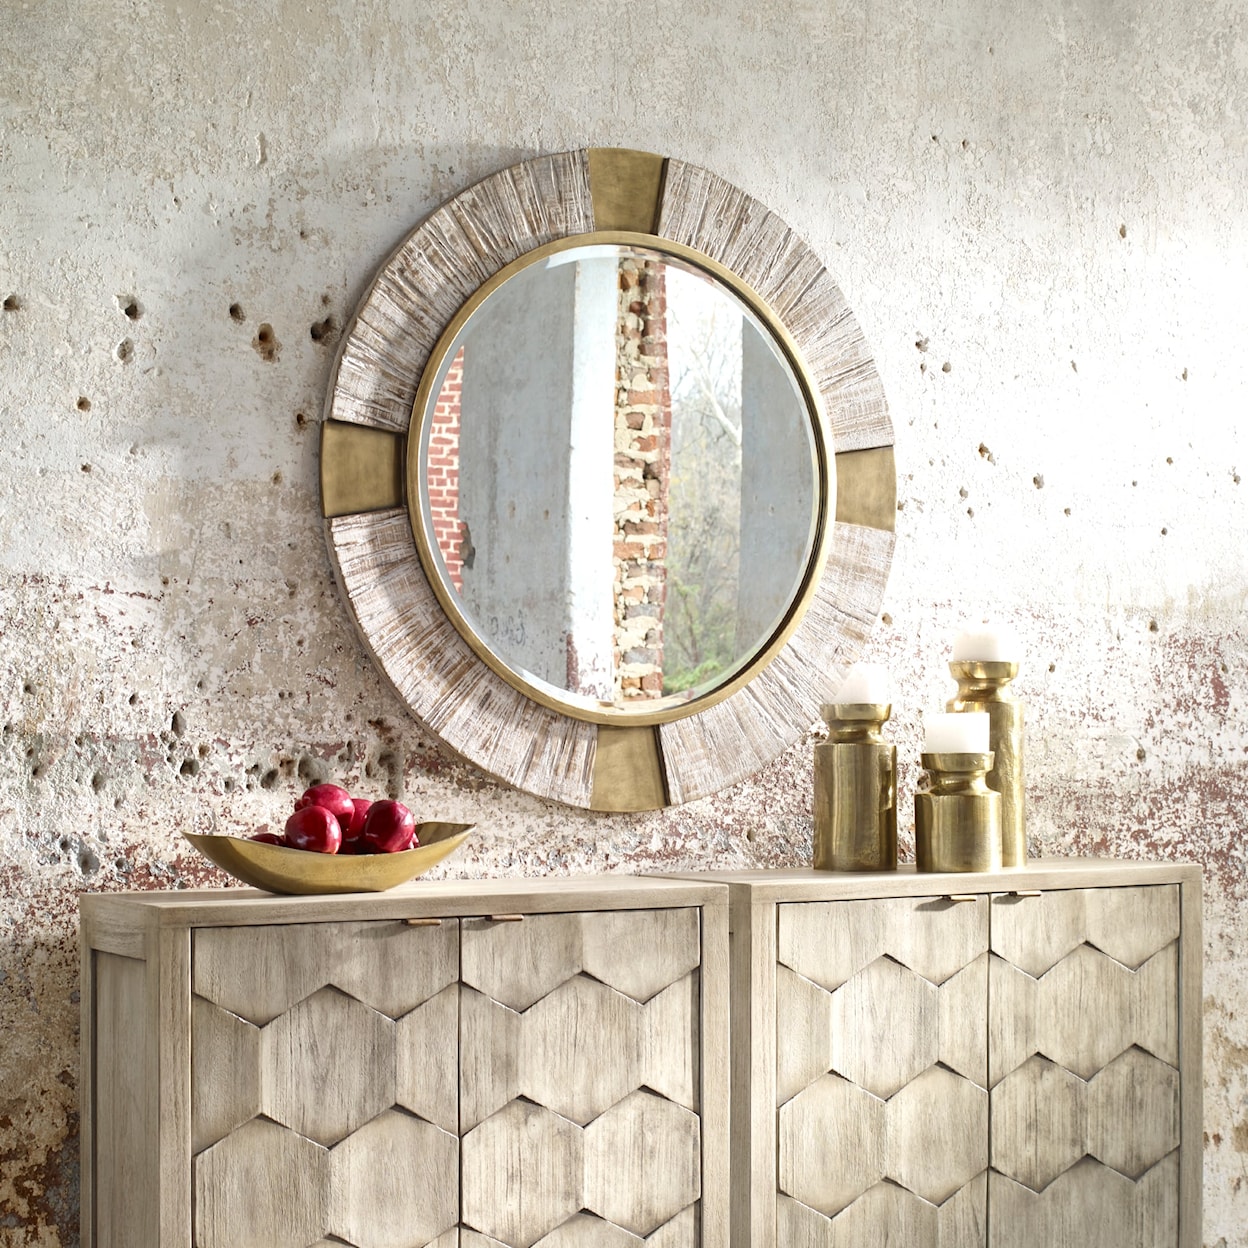 Uttermost Mirrors - Round Reuben Gold Round Mirror